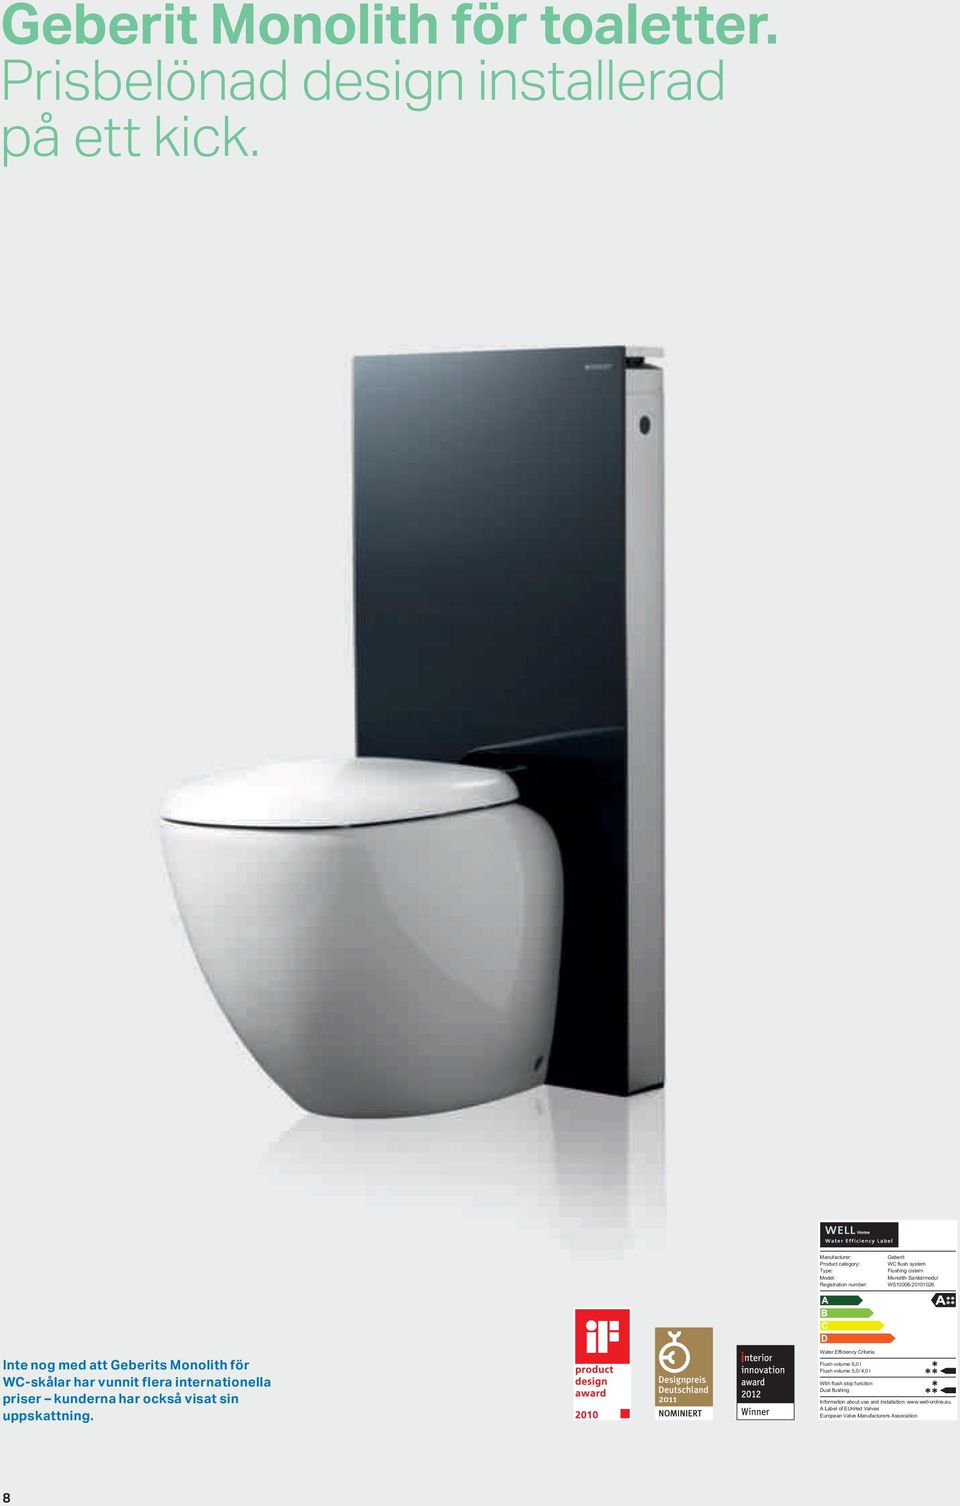 Inte nog med att Geberits Monolith för WC-skålar har vunnit flera internationella priser kunderna har också visat sin uppskattning.